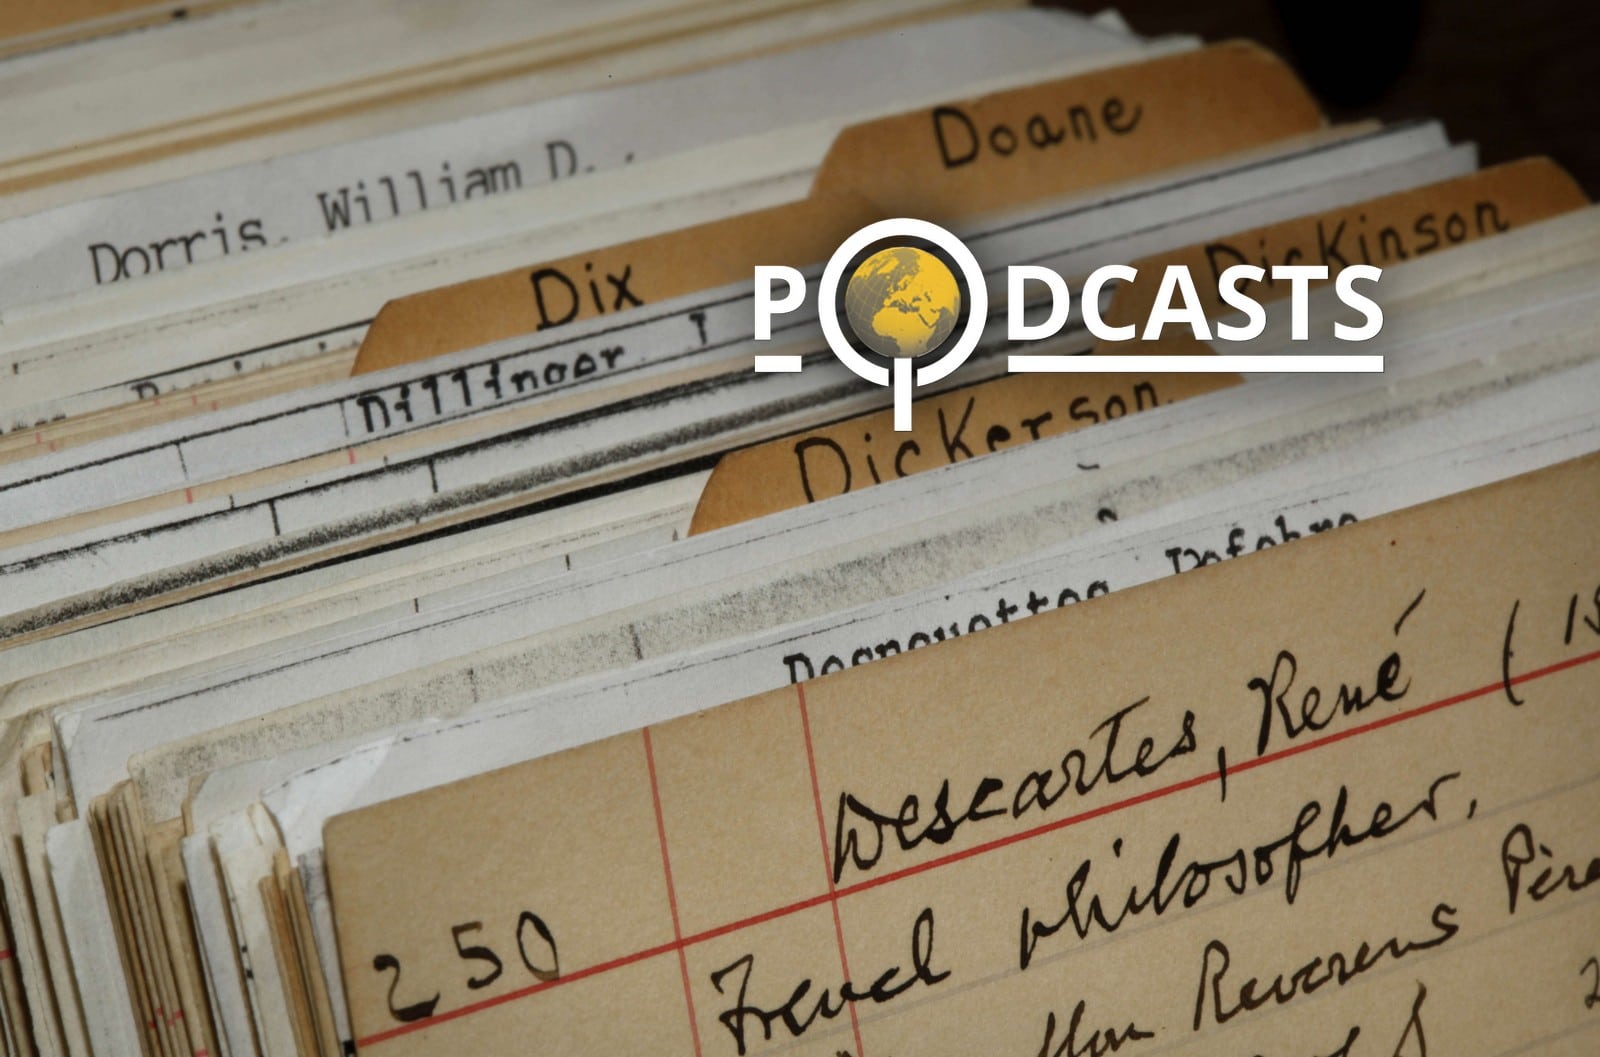 Podcast – La philosophie de Descartes